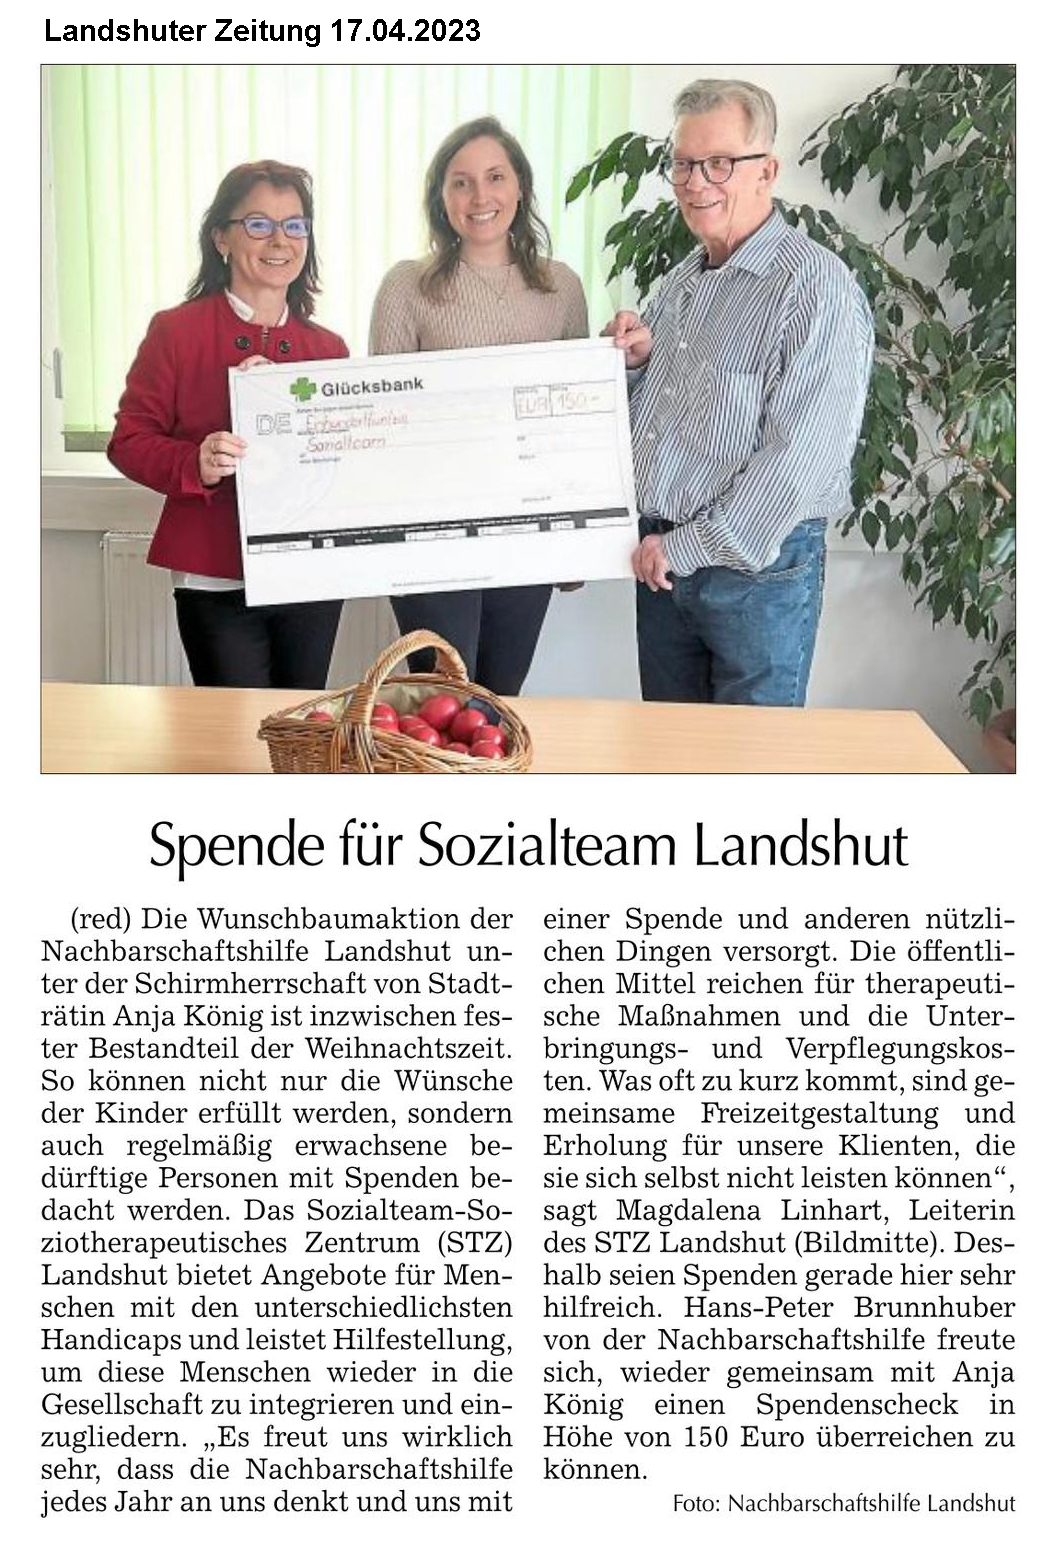 Spendenübergabe Sozialteam Landshut